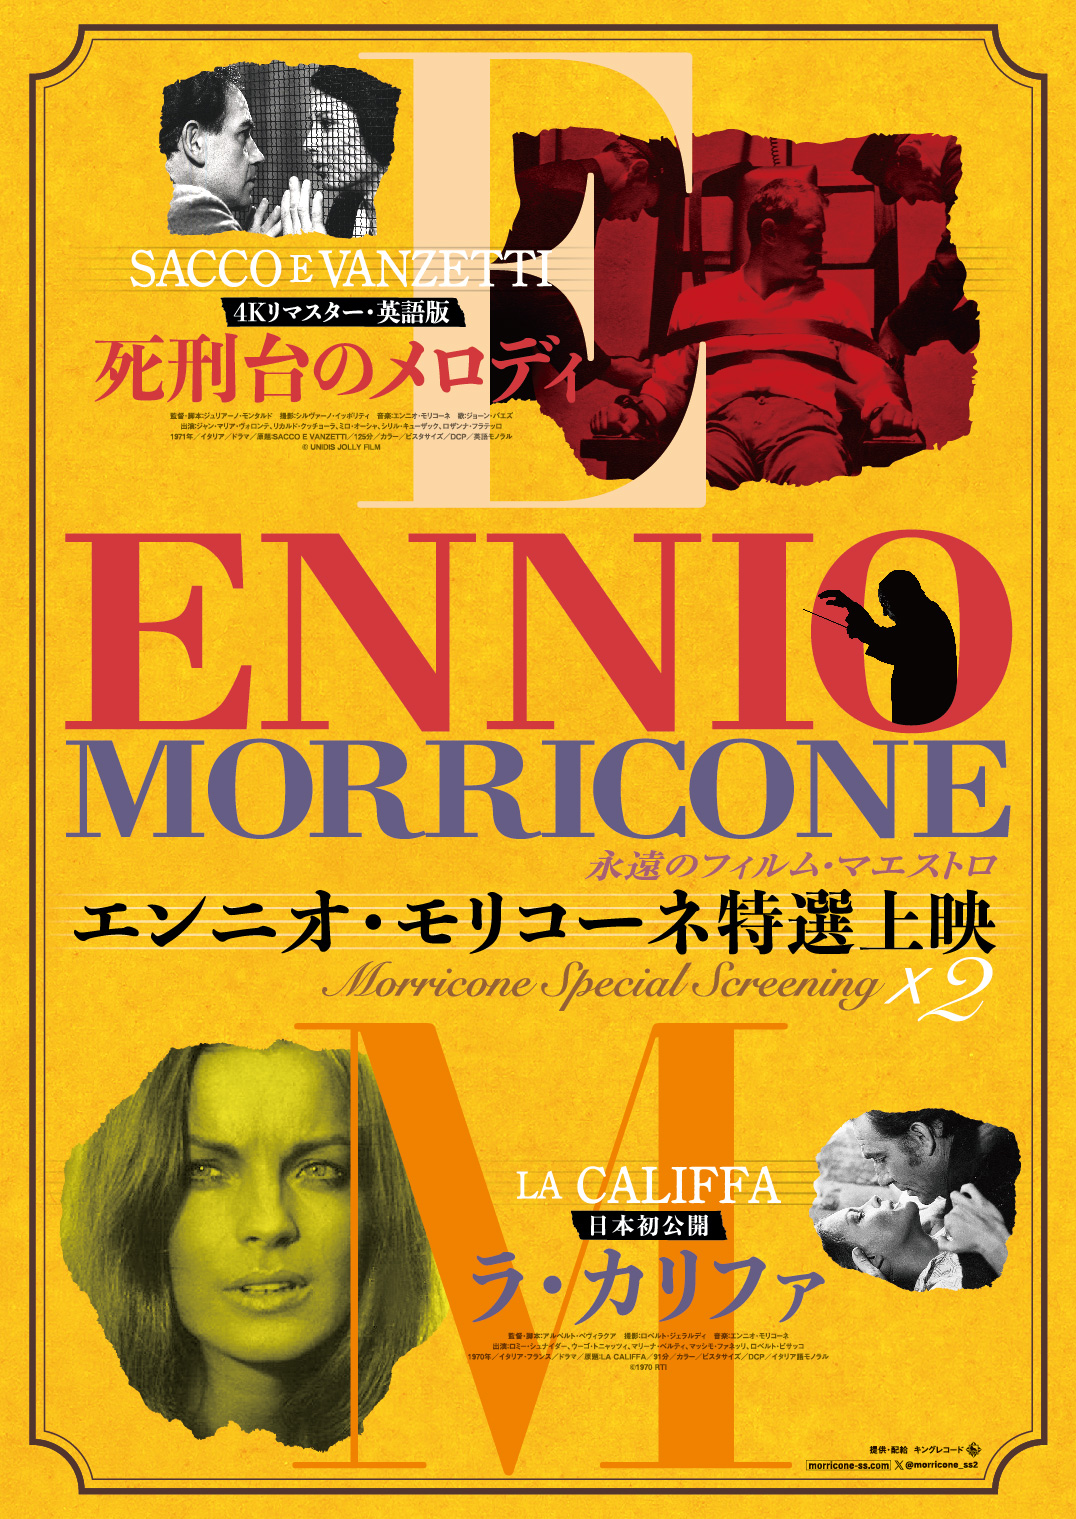 特集上映『永遠のフィルム・マエストロ エンニオ・モリコーネ特選上映 Morricone SpecialScreening×2』モリコーネの魂が宿り続ける